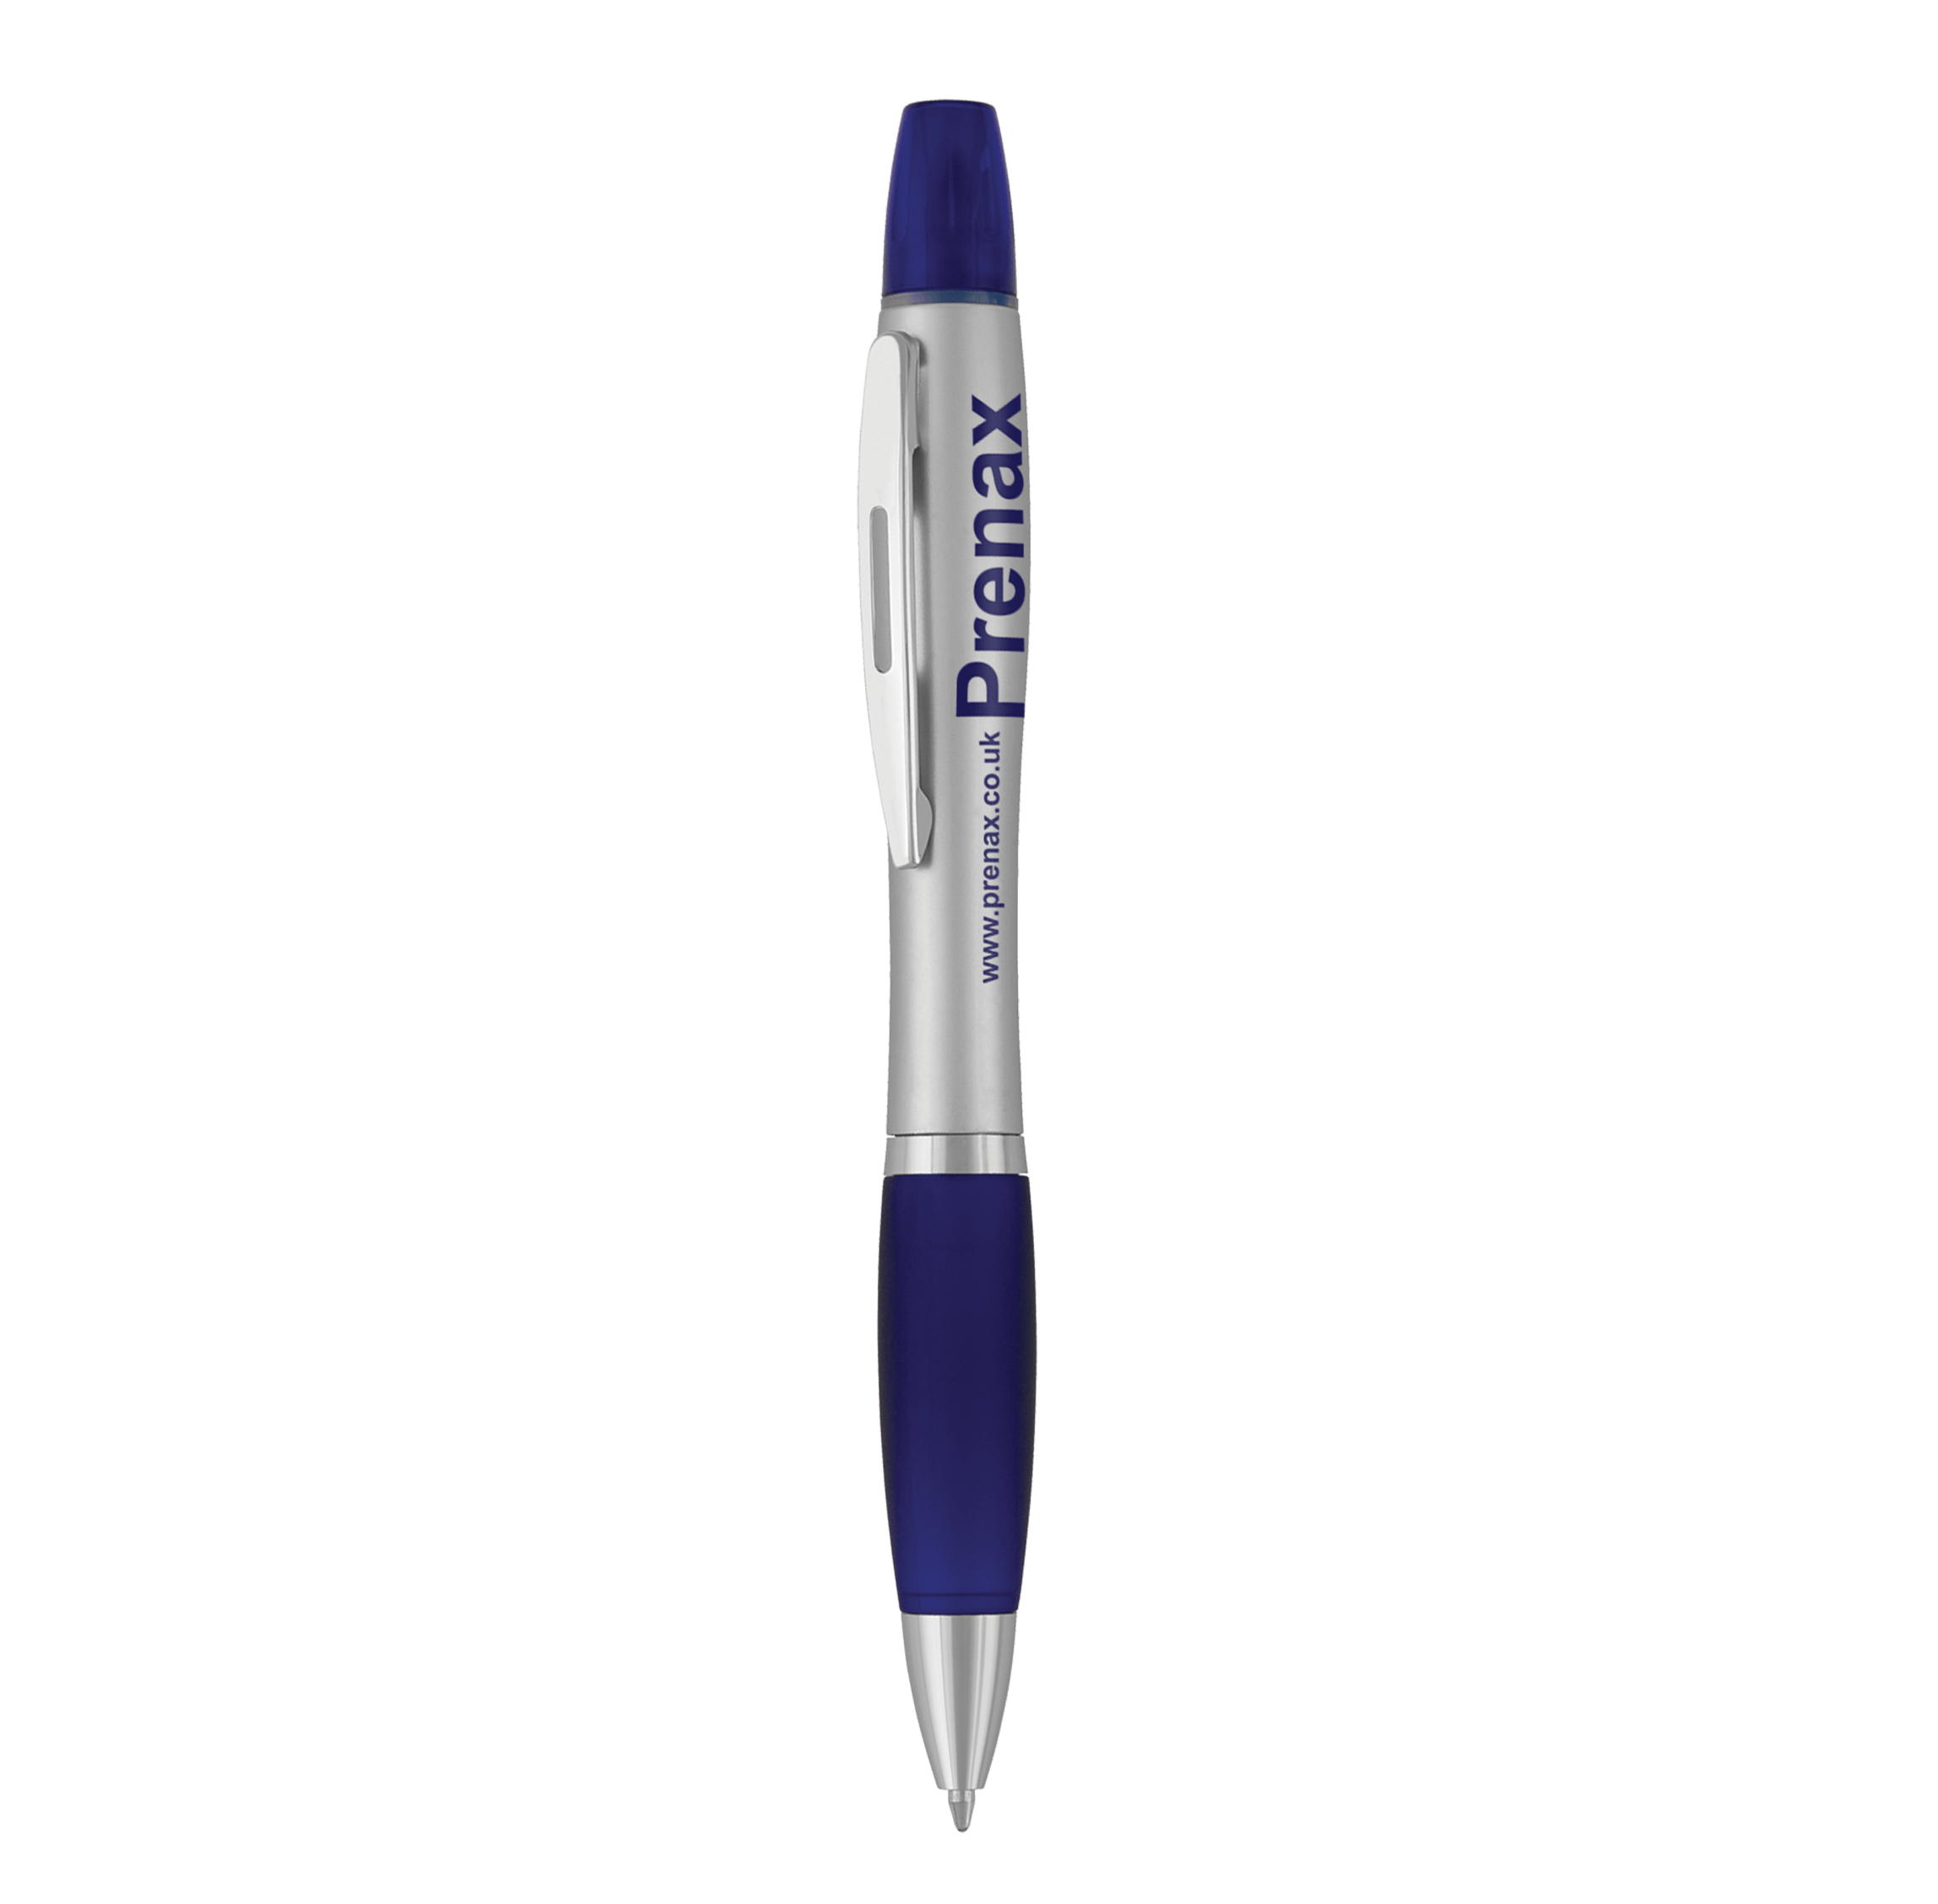 Curvaceous personalizado highlighter & caneta esferográfica